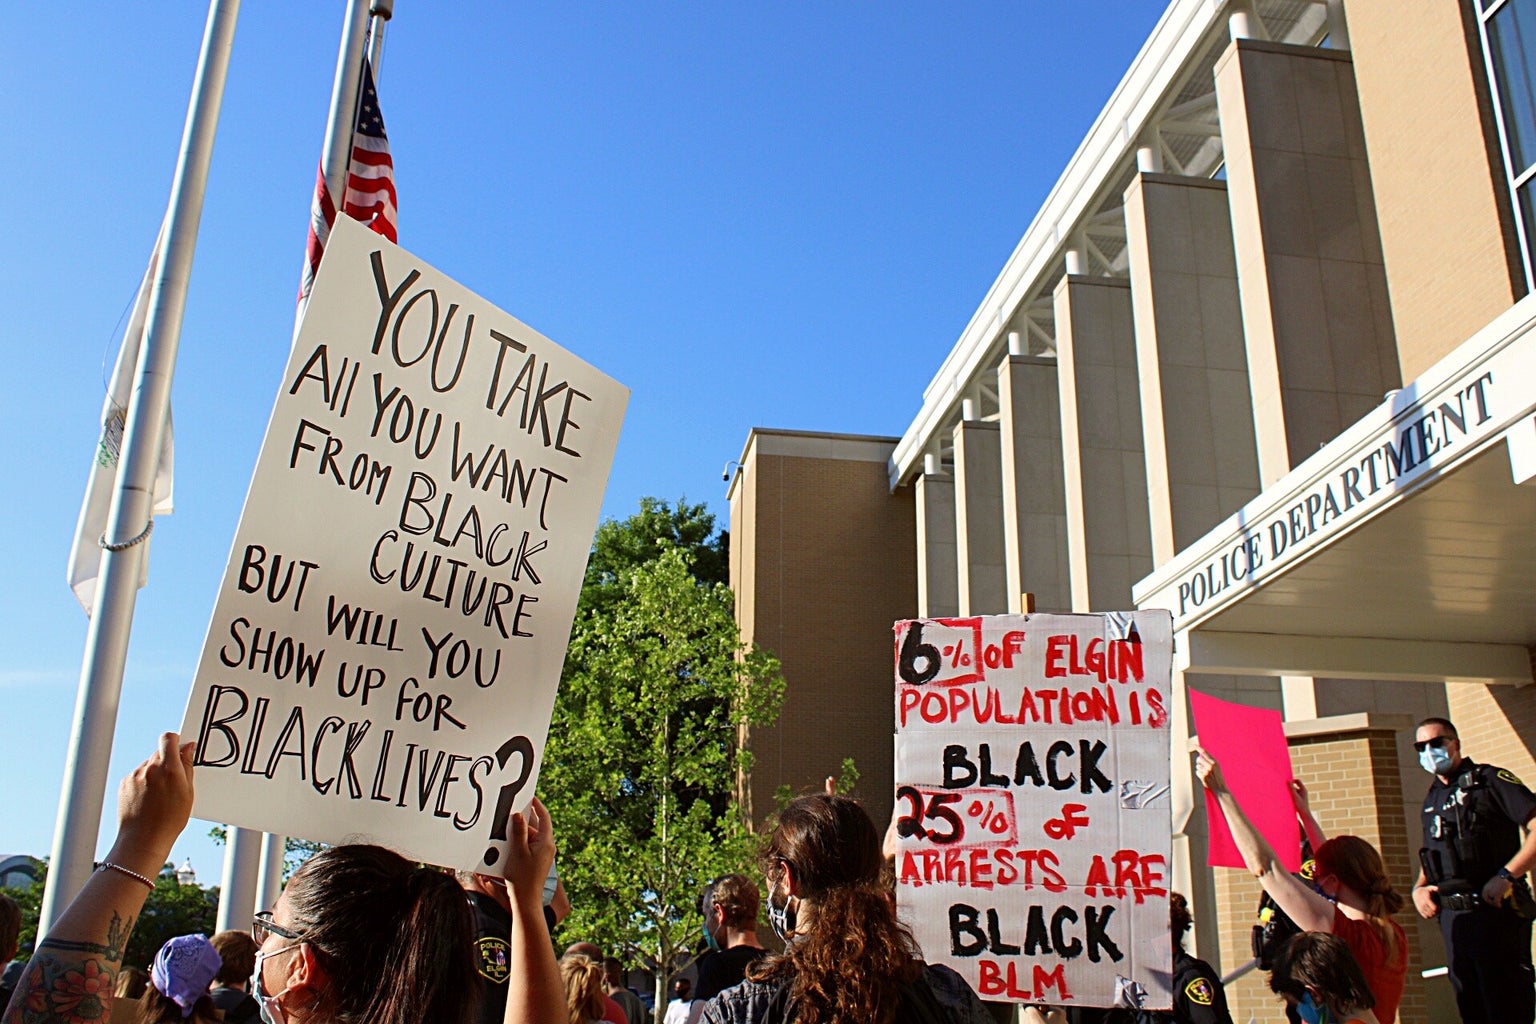 Black lives matter protest signs